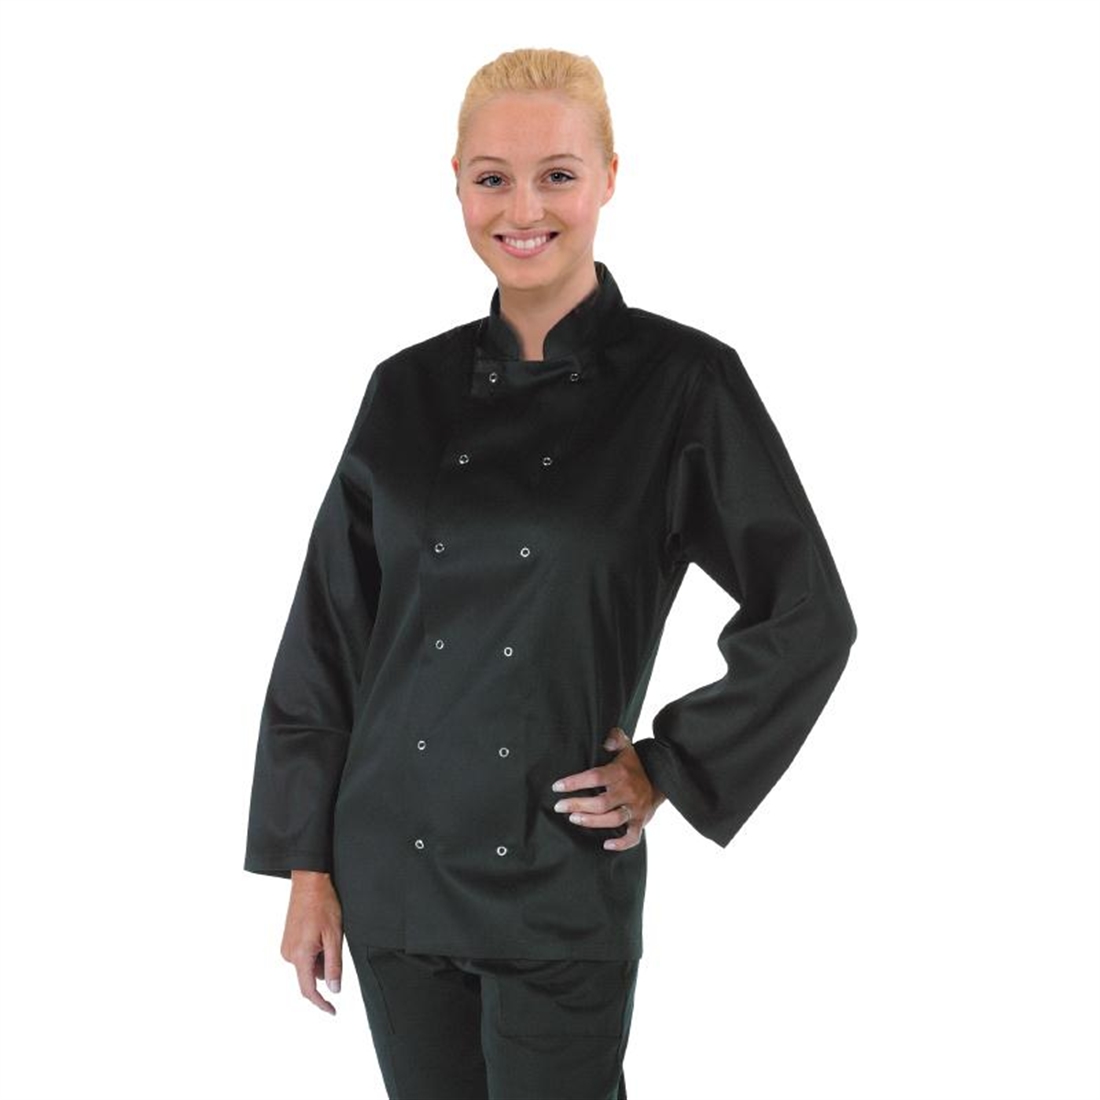 Whites Vegas Chef Jacket Long Sleeve Black - M